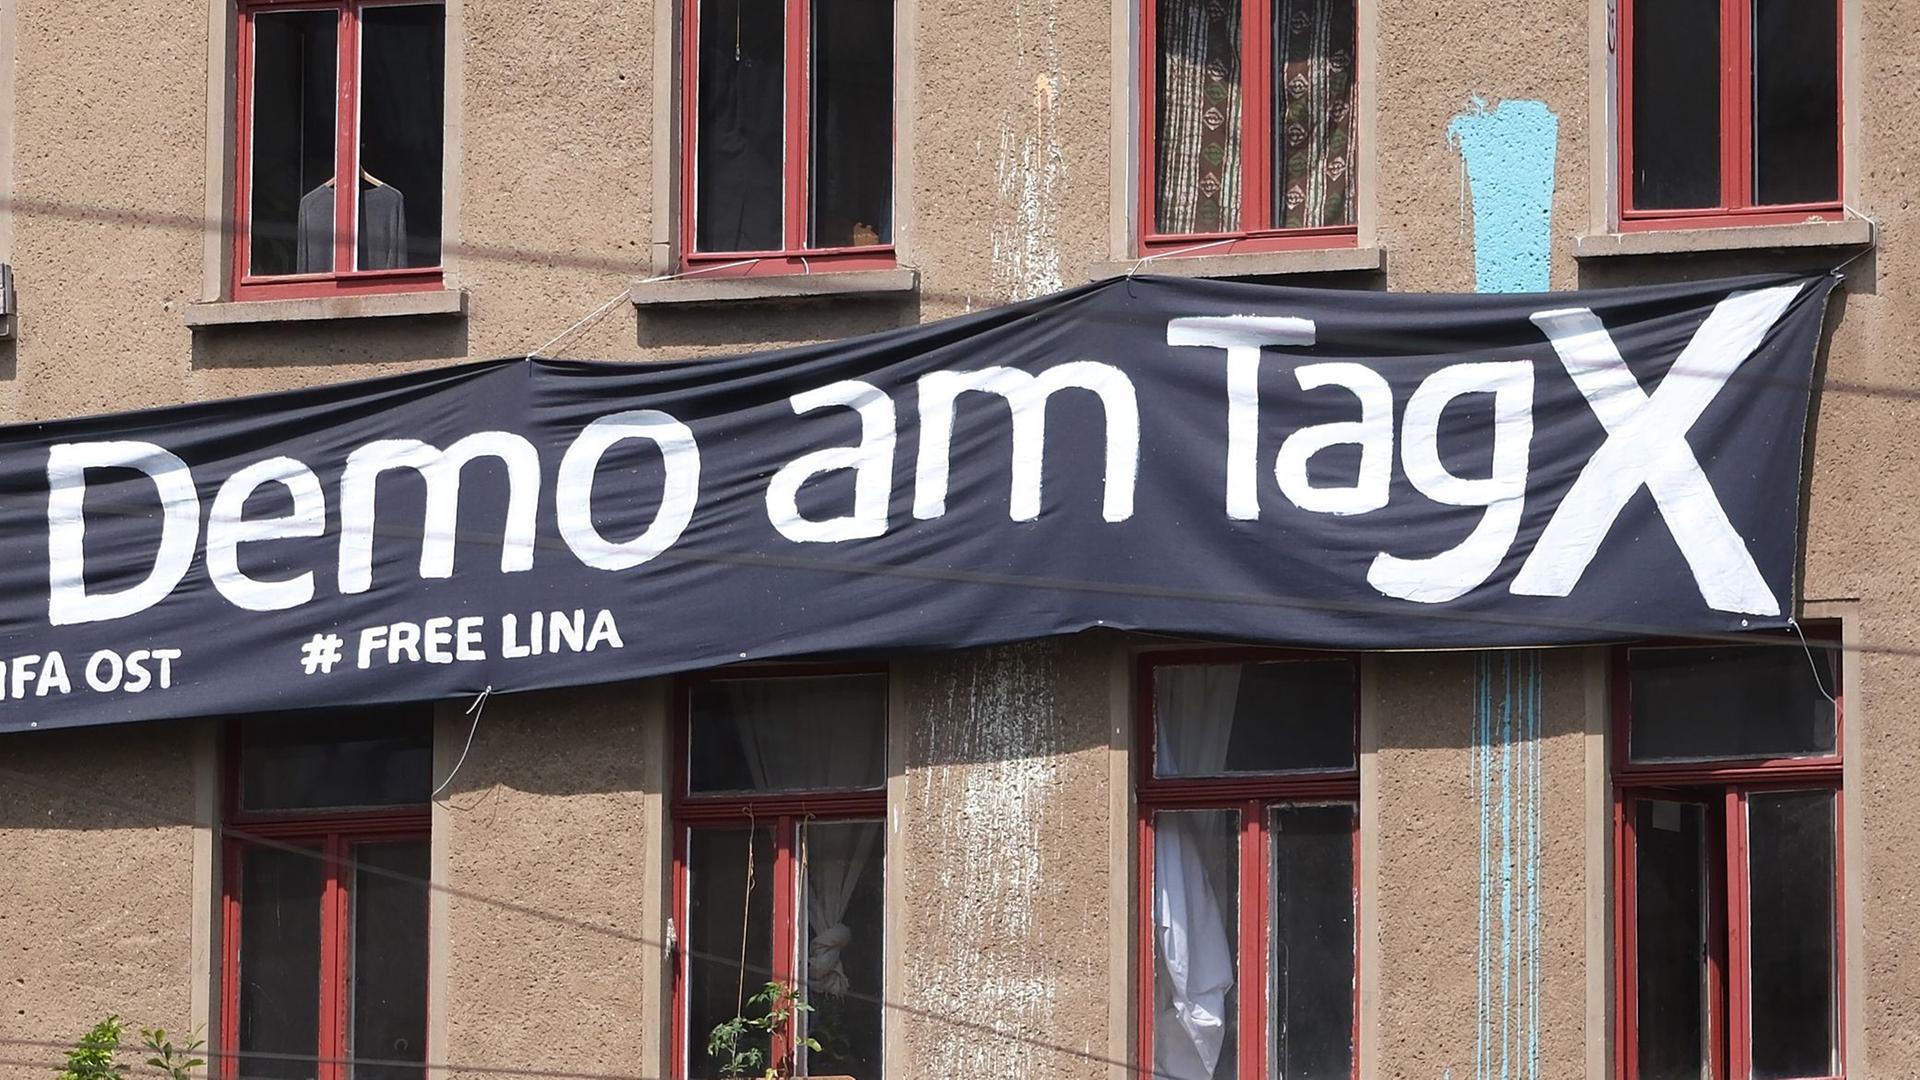 Ein Transparent mit der Aufschrift "Demo am Tag X" und "# Free Lina" hängt an der Fassade eines Hauses in Leipzig